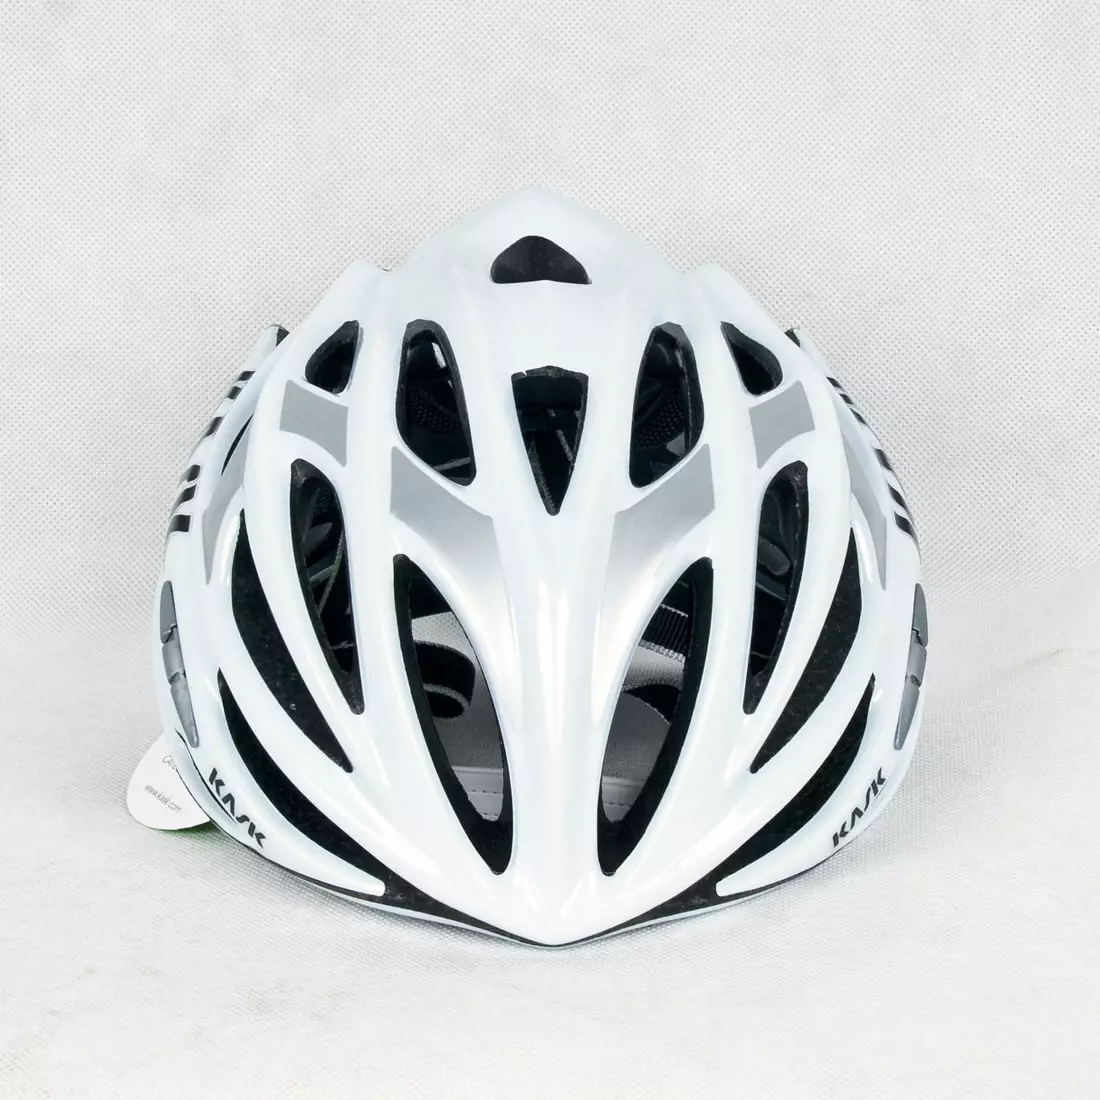 CASCA MOJITO - casca de bicicleta CHE00044.203 culoare: alb